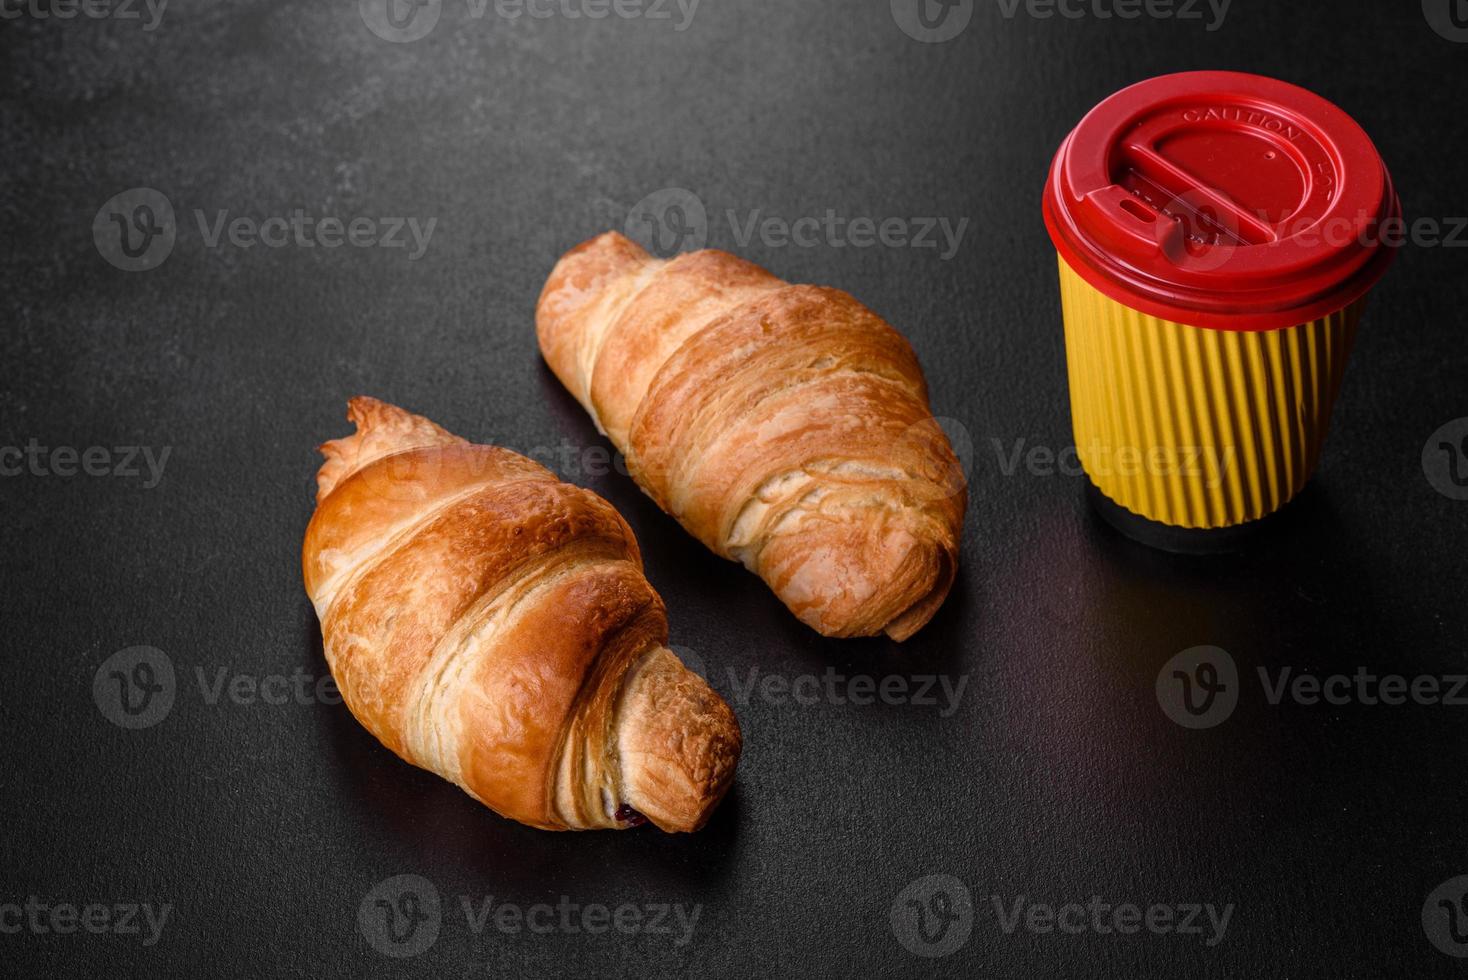 frisches knackiges leckeres französisches Croissant mit einer Tasse duftendem Kaffee foto